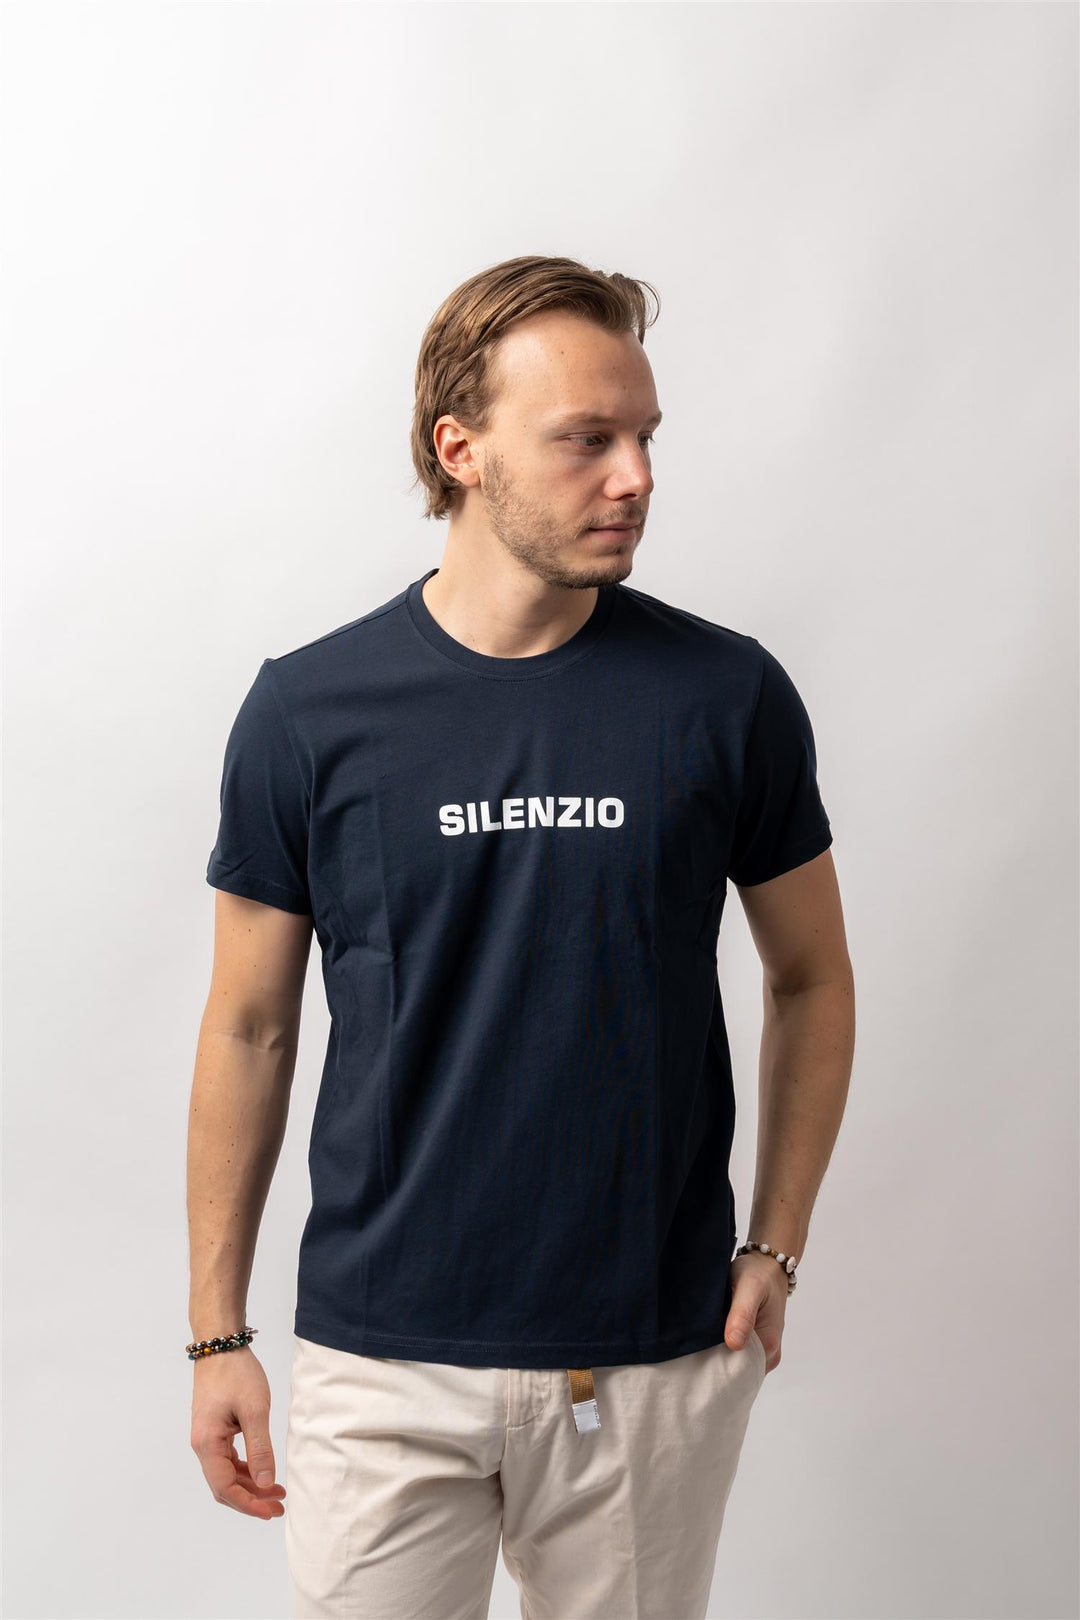 Silenzio T-Shirt Navy